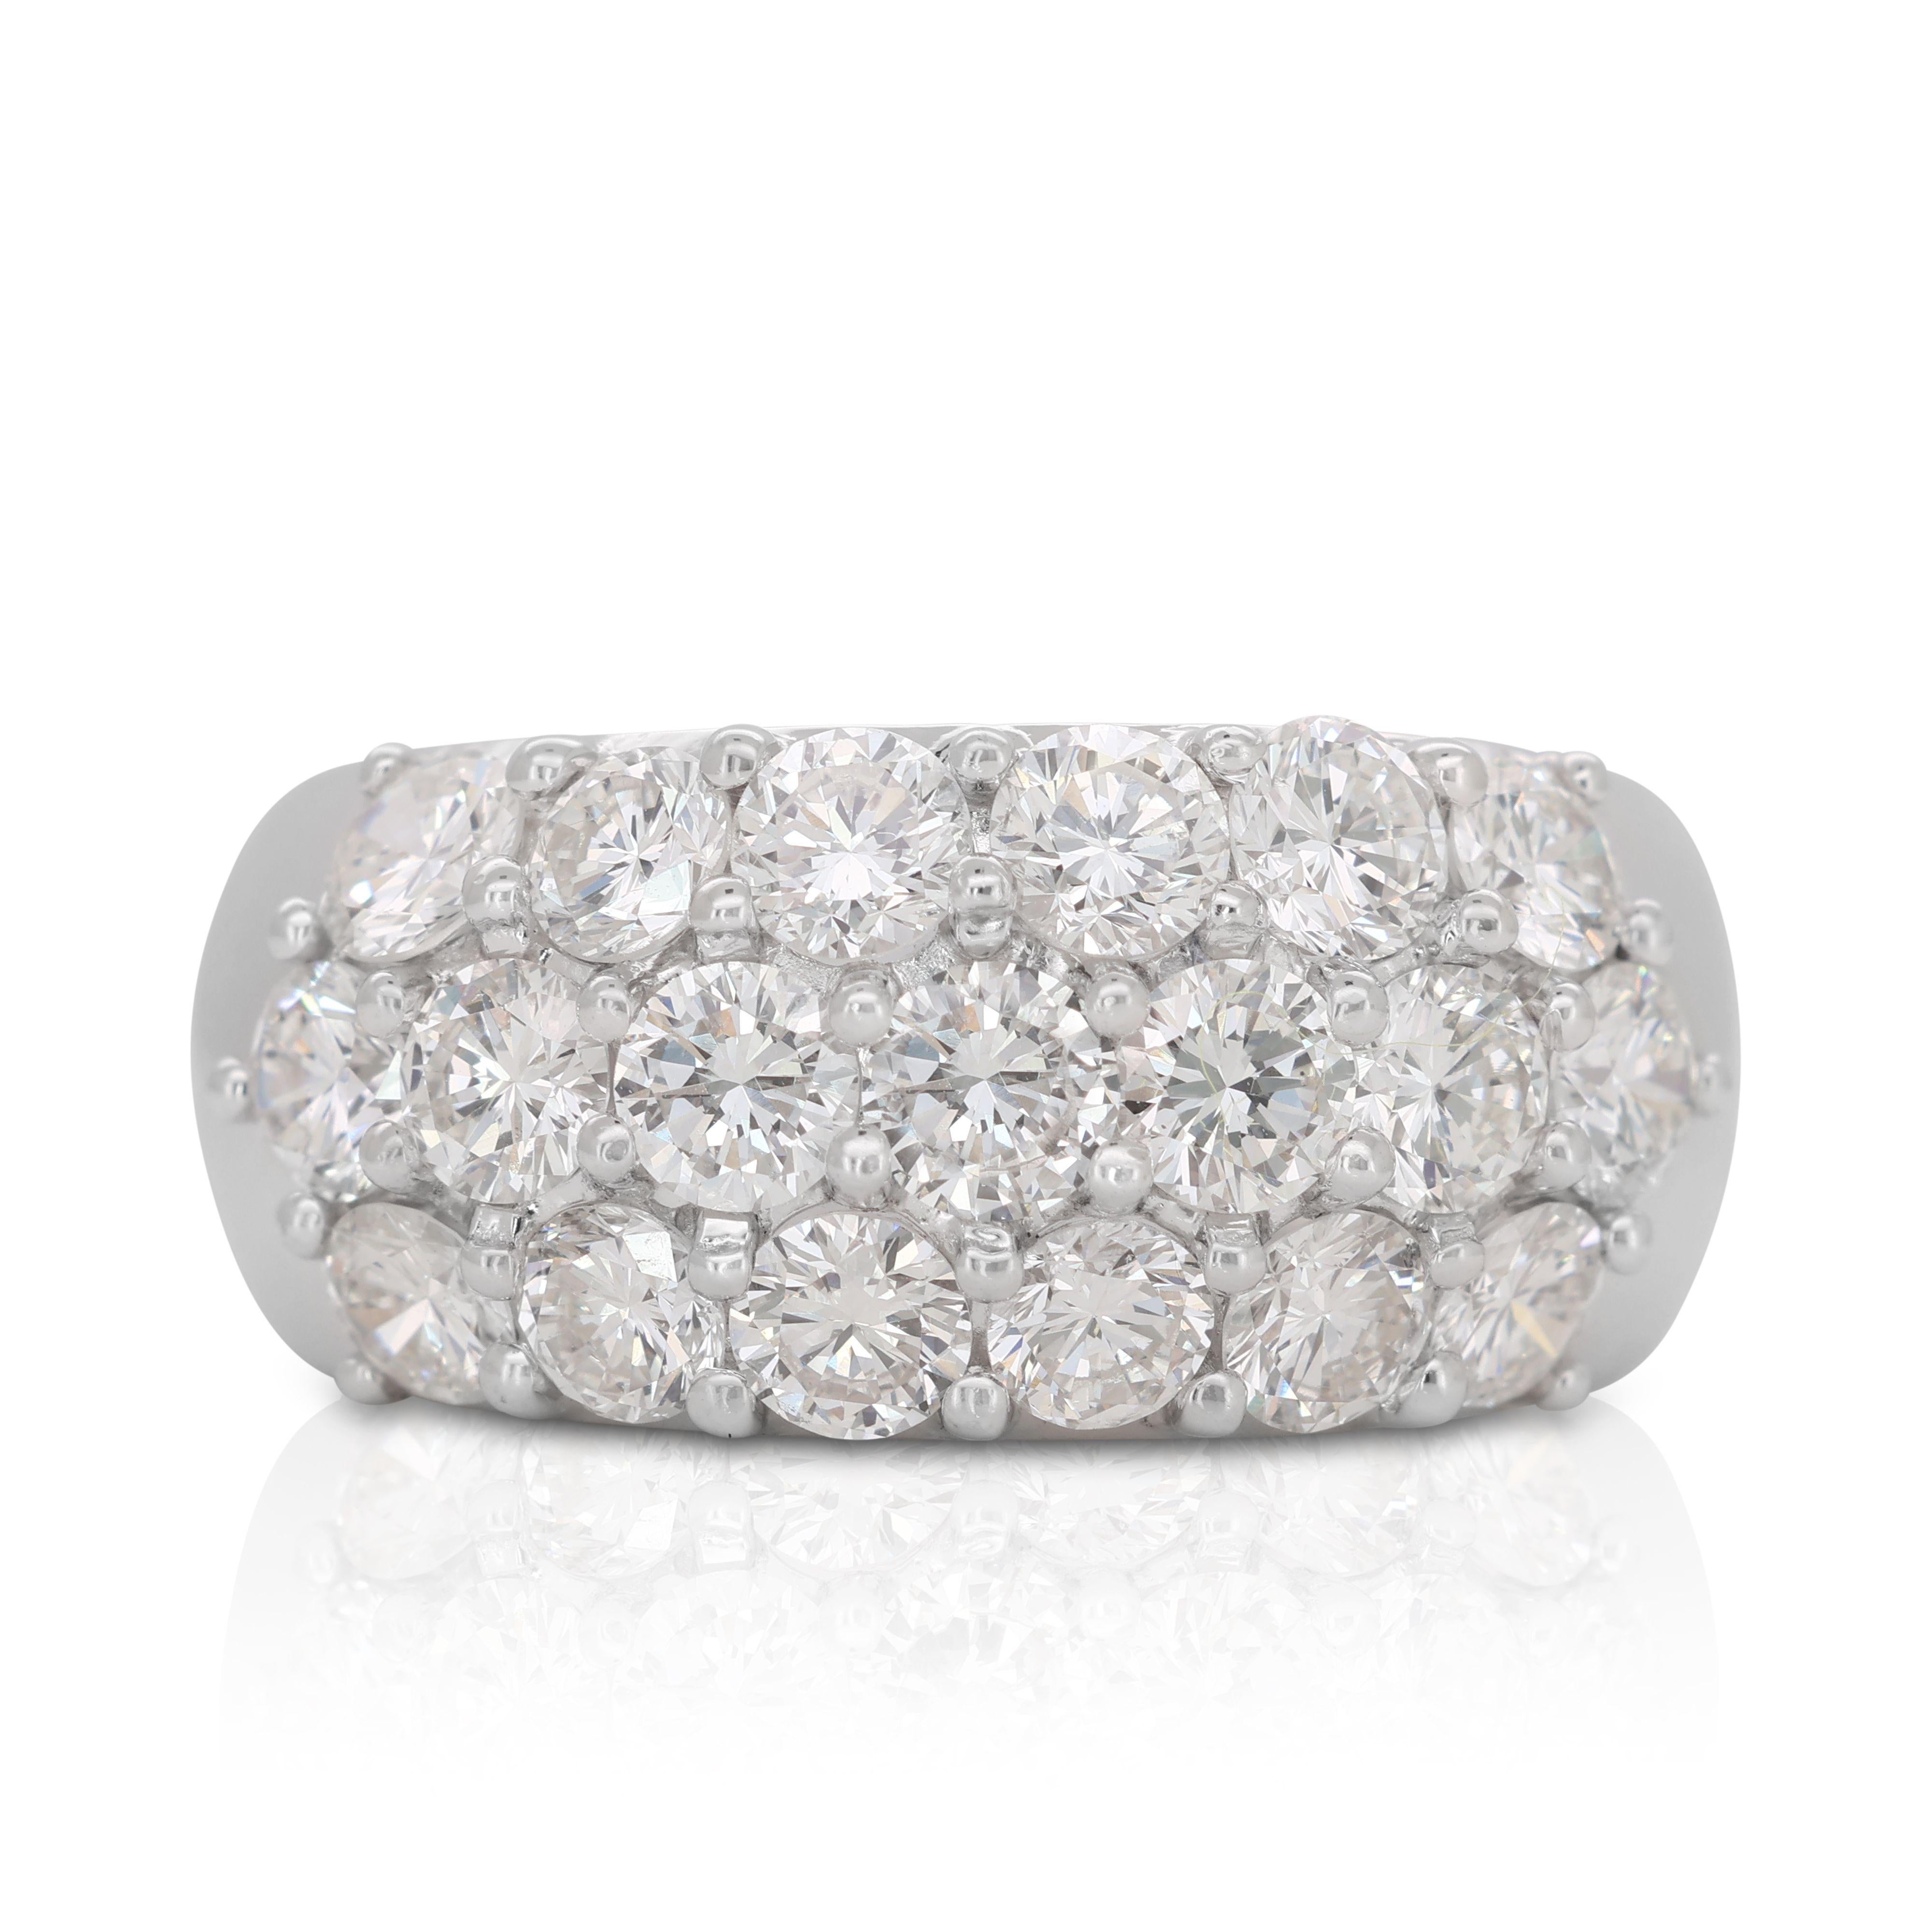 Bezaubernder 18k Weißgold Dome Ring mit 2,2 Karat natürlichen Diamanten IGI Zertifikat